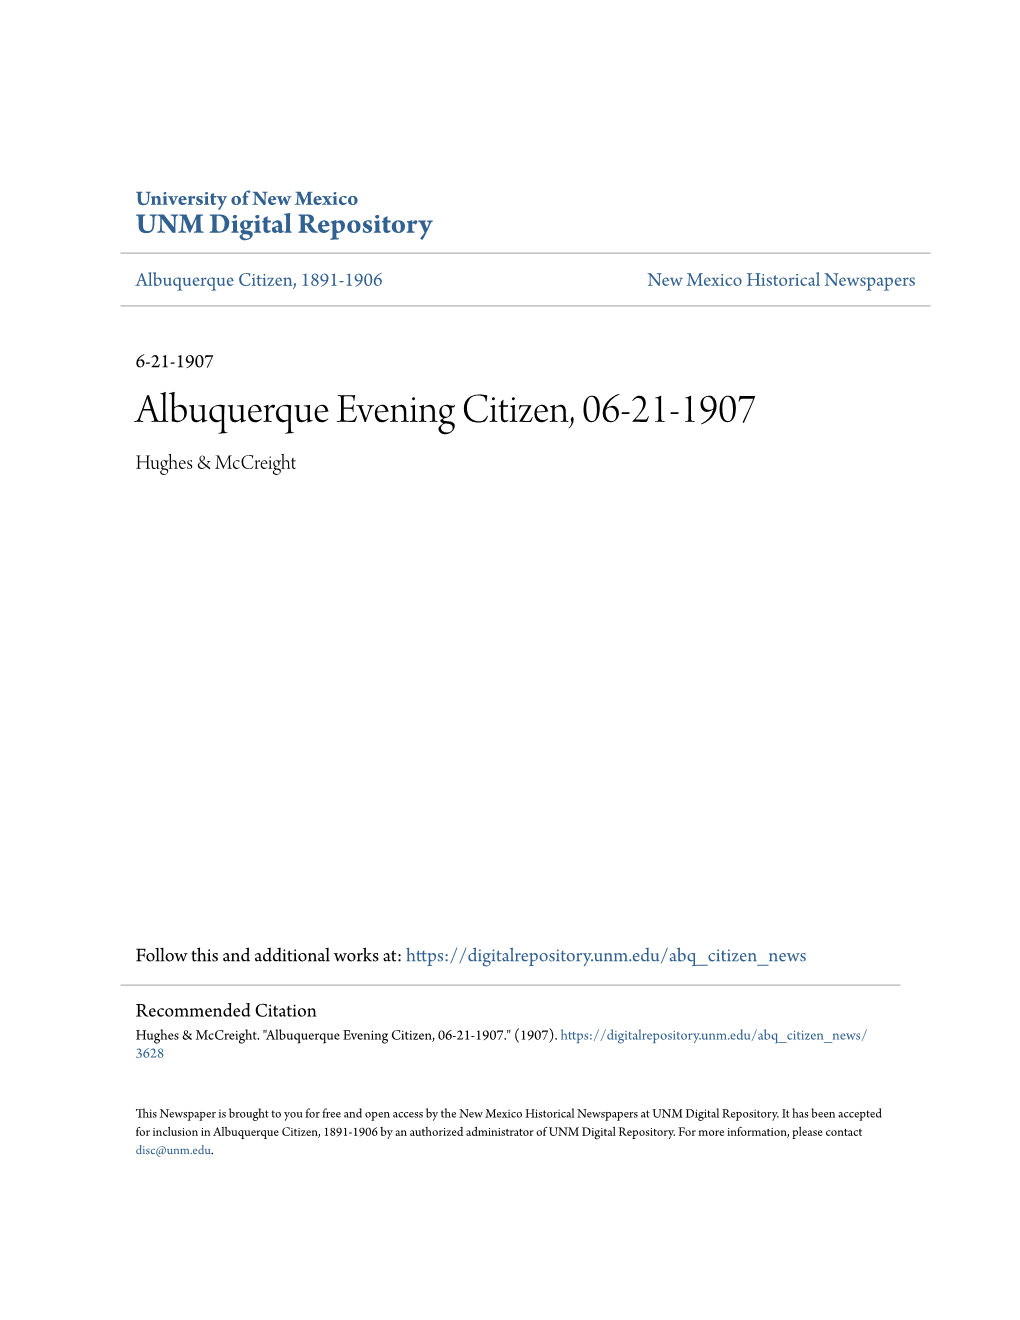 Albuquerque Evening Citizen, 06-21-1907 Hughes & Mccreight